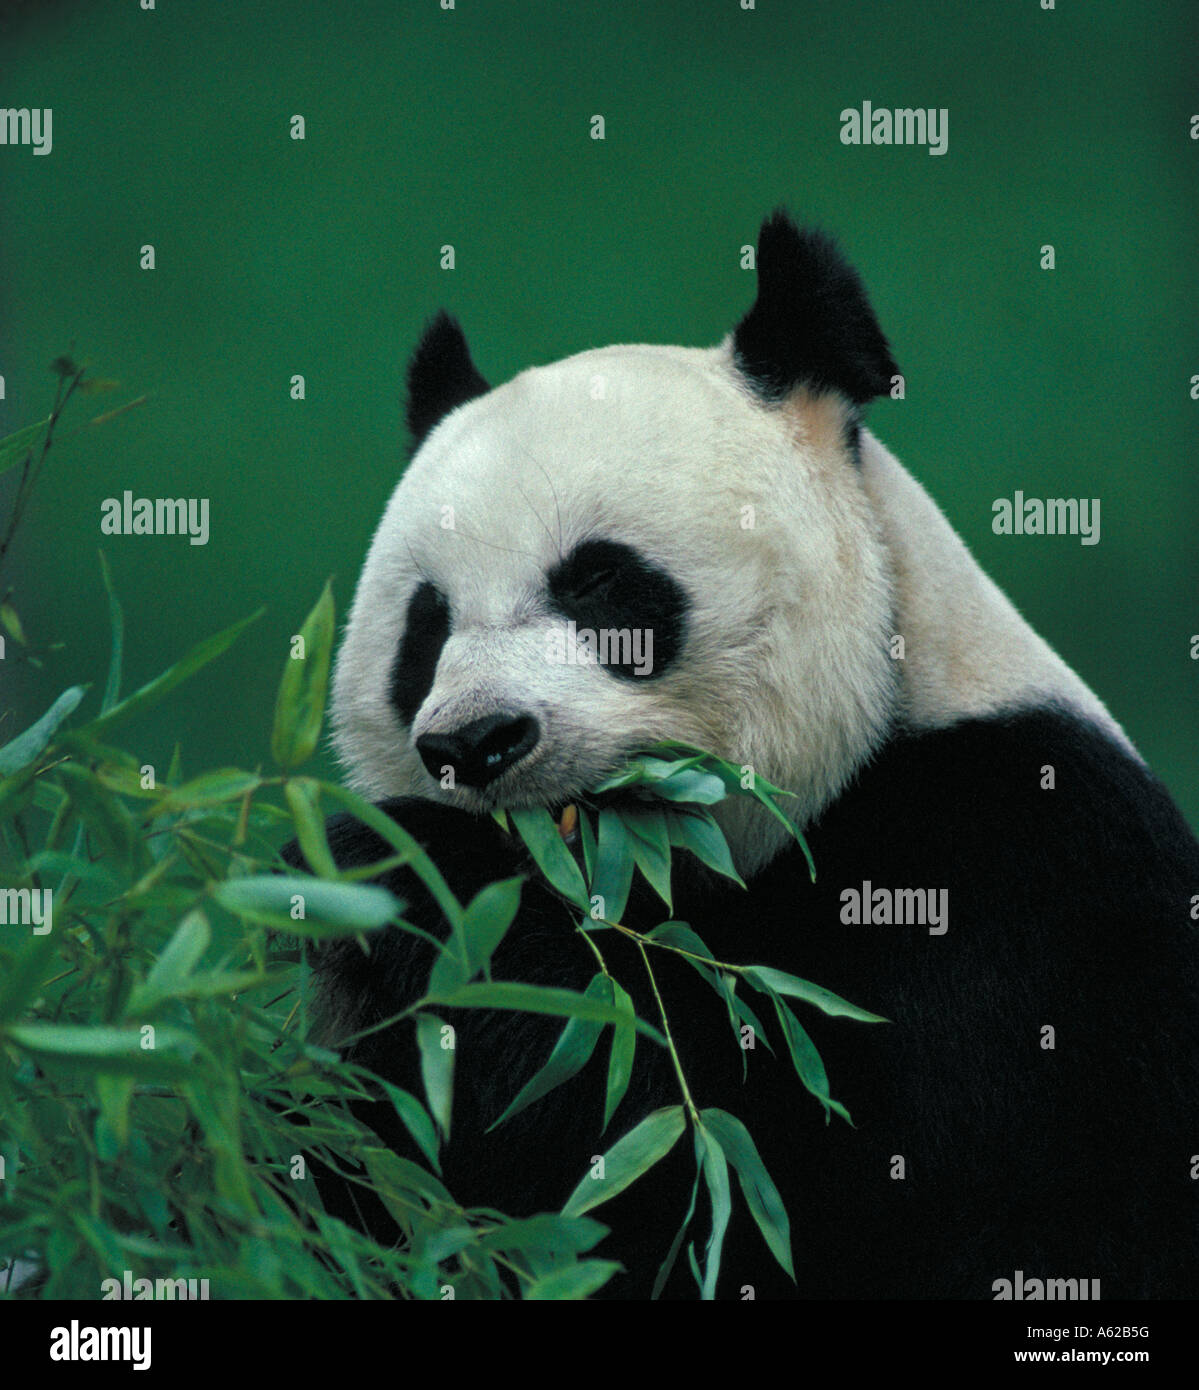 Panda géant Ailuropoda melanoleuca en captivité Banque D'Images